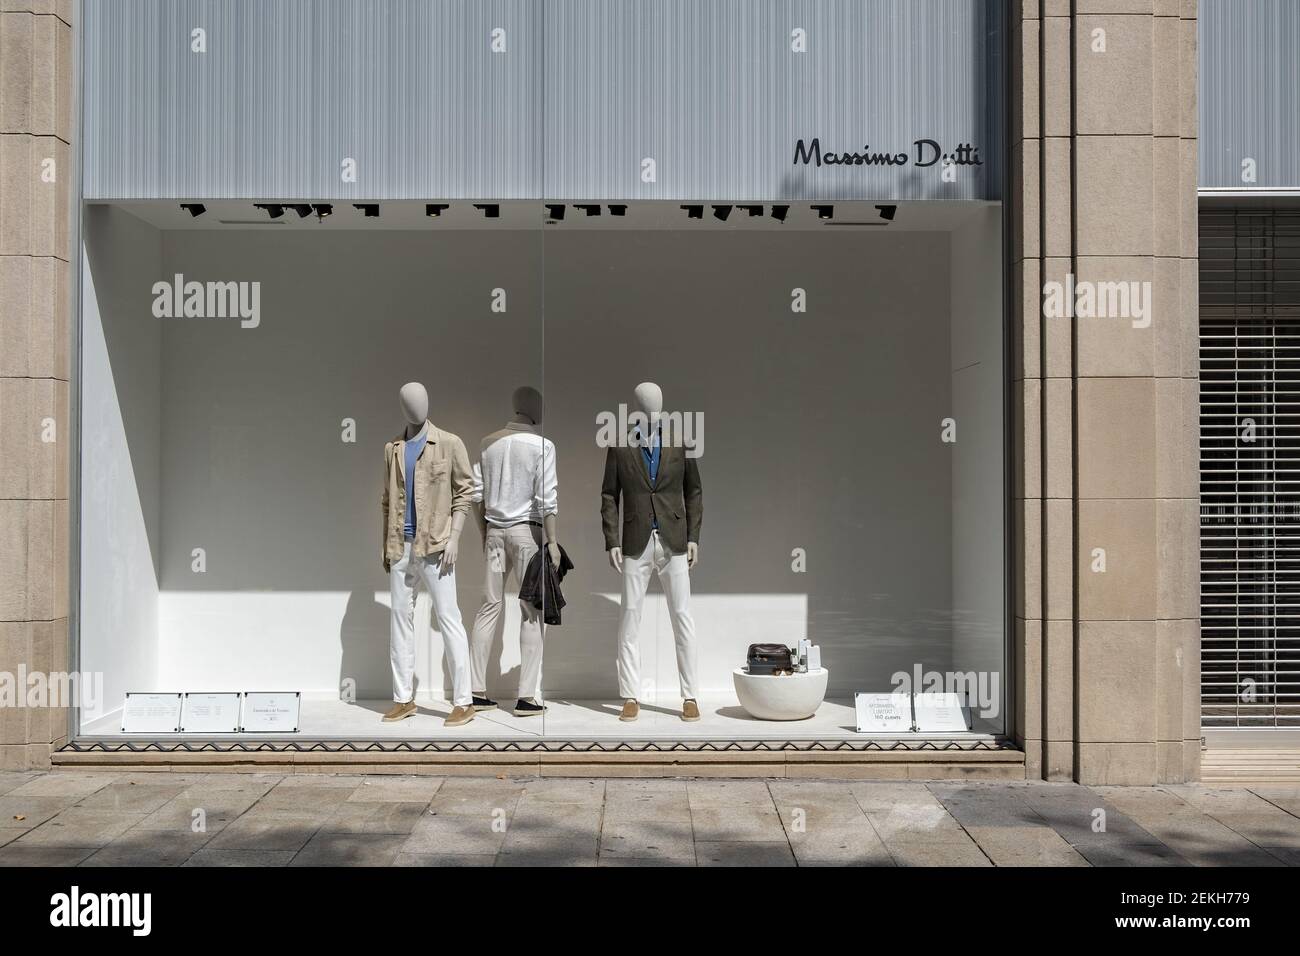 Eine der Geschäfte von Massimo Dutti, eine Marke der Inditex-Gruppe, ist im  kommerziellen Zentrum von Portal del l'Àngel de Barcelona abgebildet.  Nachdem der Textilriese Inditex im Besitz des spanischen Amancio Ortega  erstmals